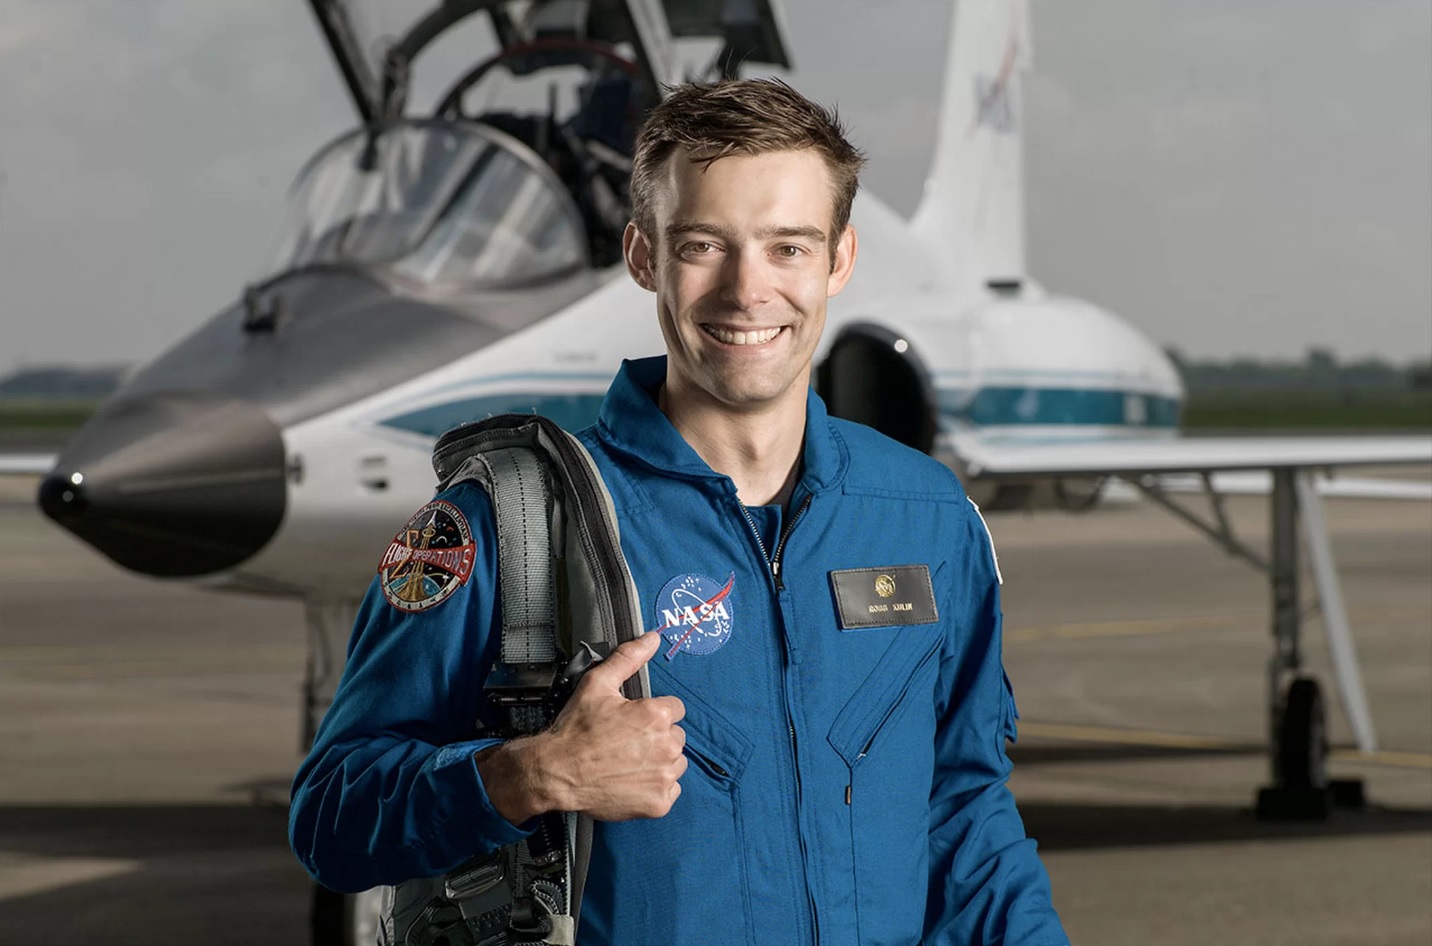 İlk 50 yıl içinde potansiyel bir NASA astronot reddetti öğrenme